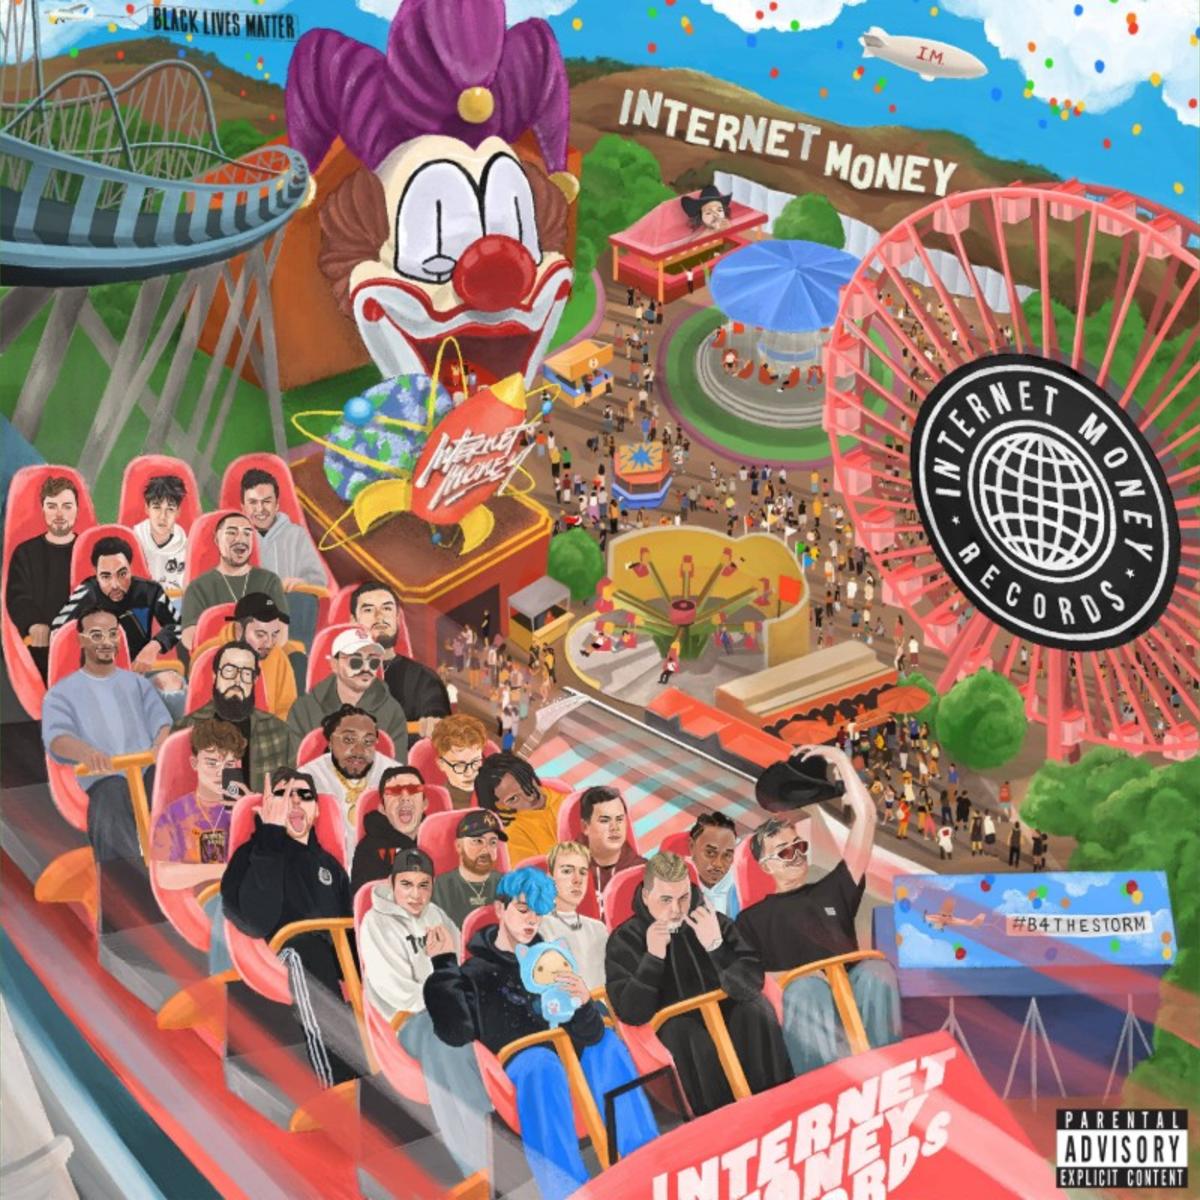 Internet Money – B4 The Storm (Album Review)